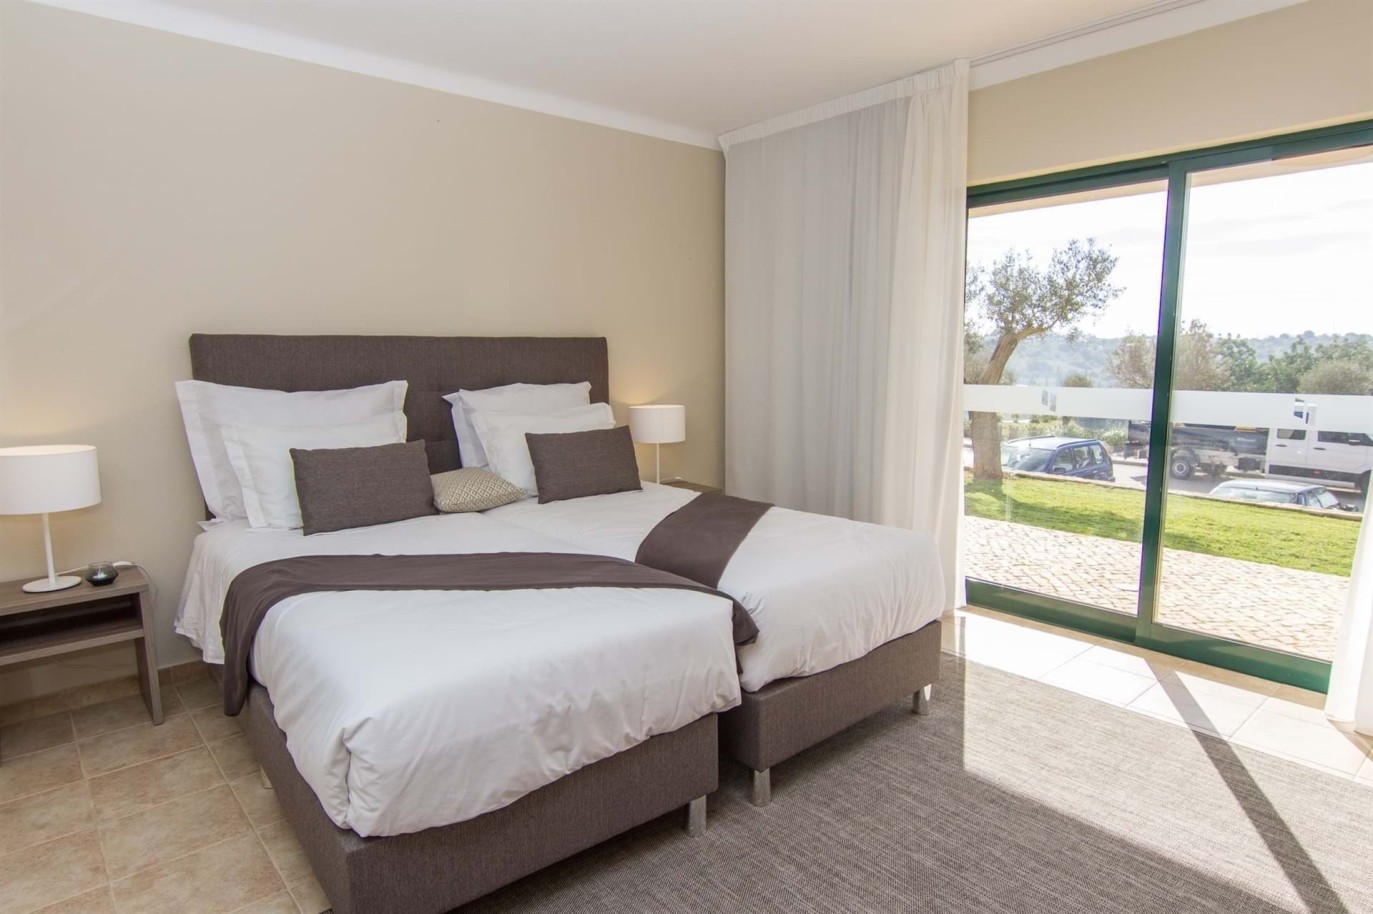 Venta de apartamento nuevo en el Carvoeiro, Algarve, Portugal_215614